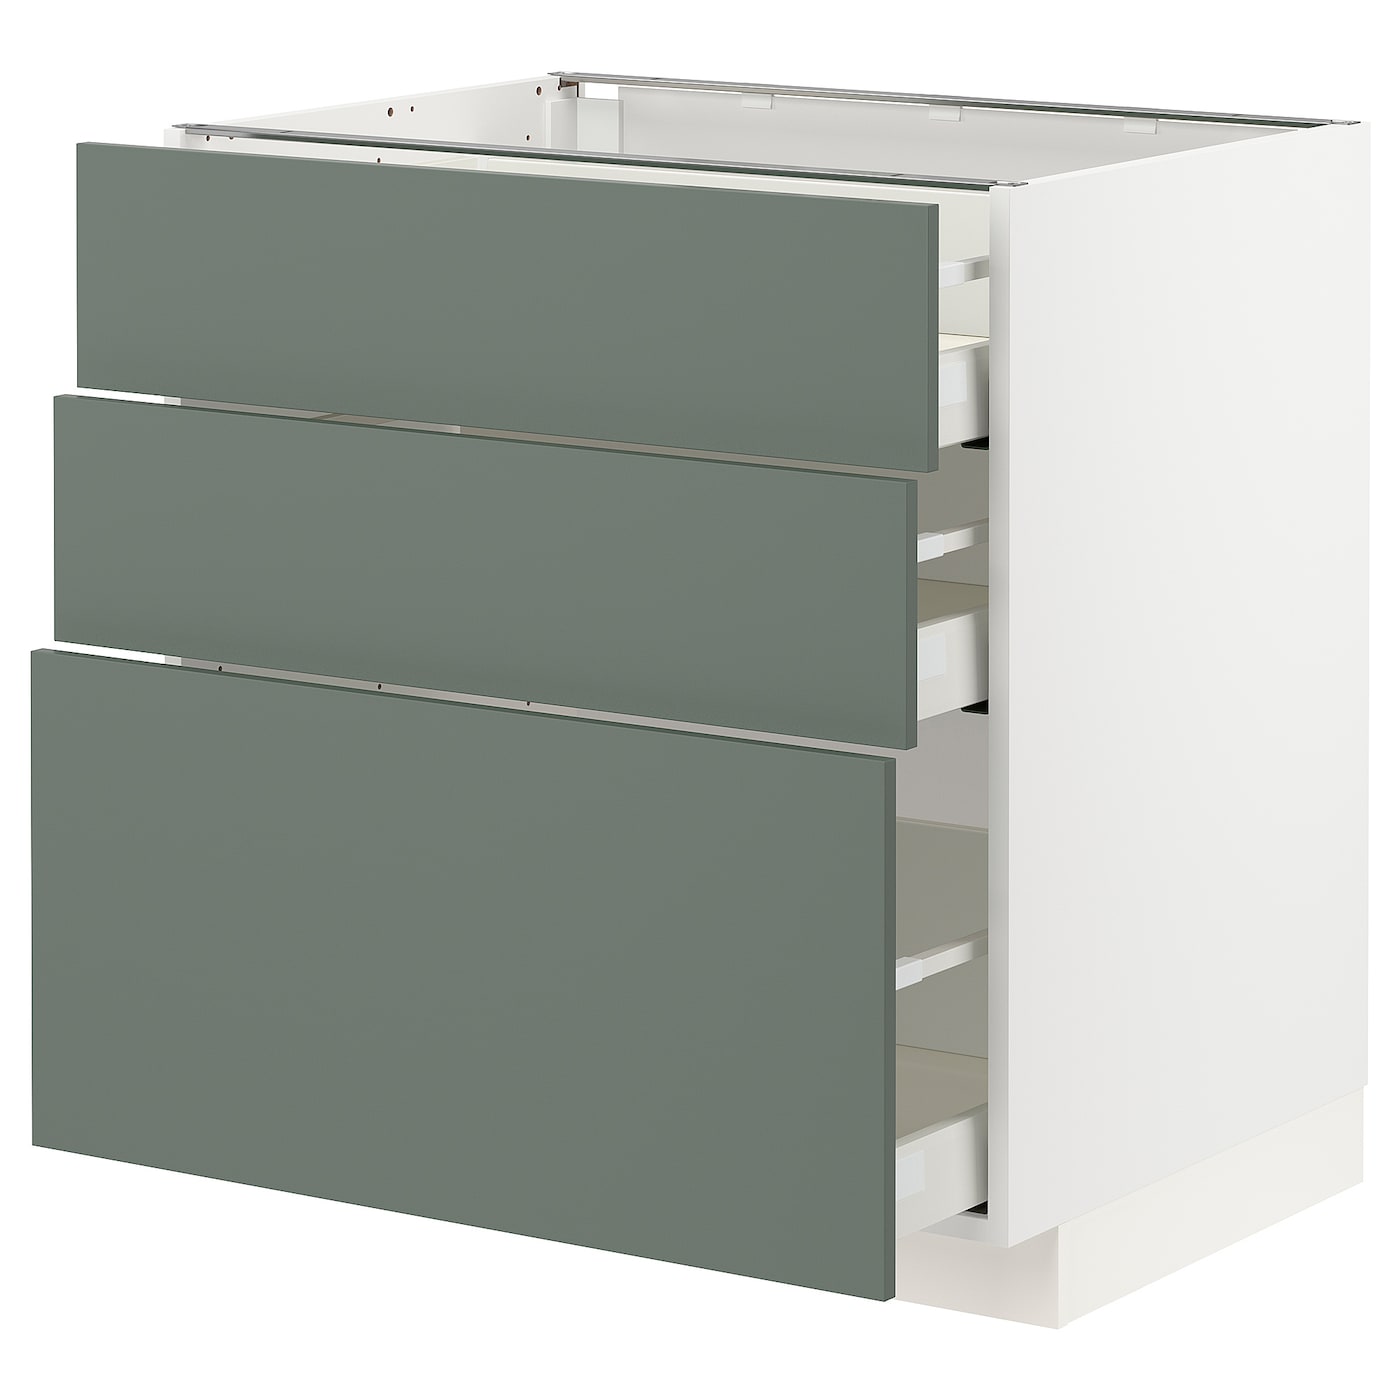 Напольный шкаф - METOD / MAXIMERA IKEA/ МЕТОД/ МАКСИМЕРА ИКЕА,  88х80 см, белый/зеленый